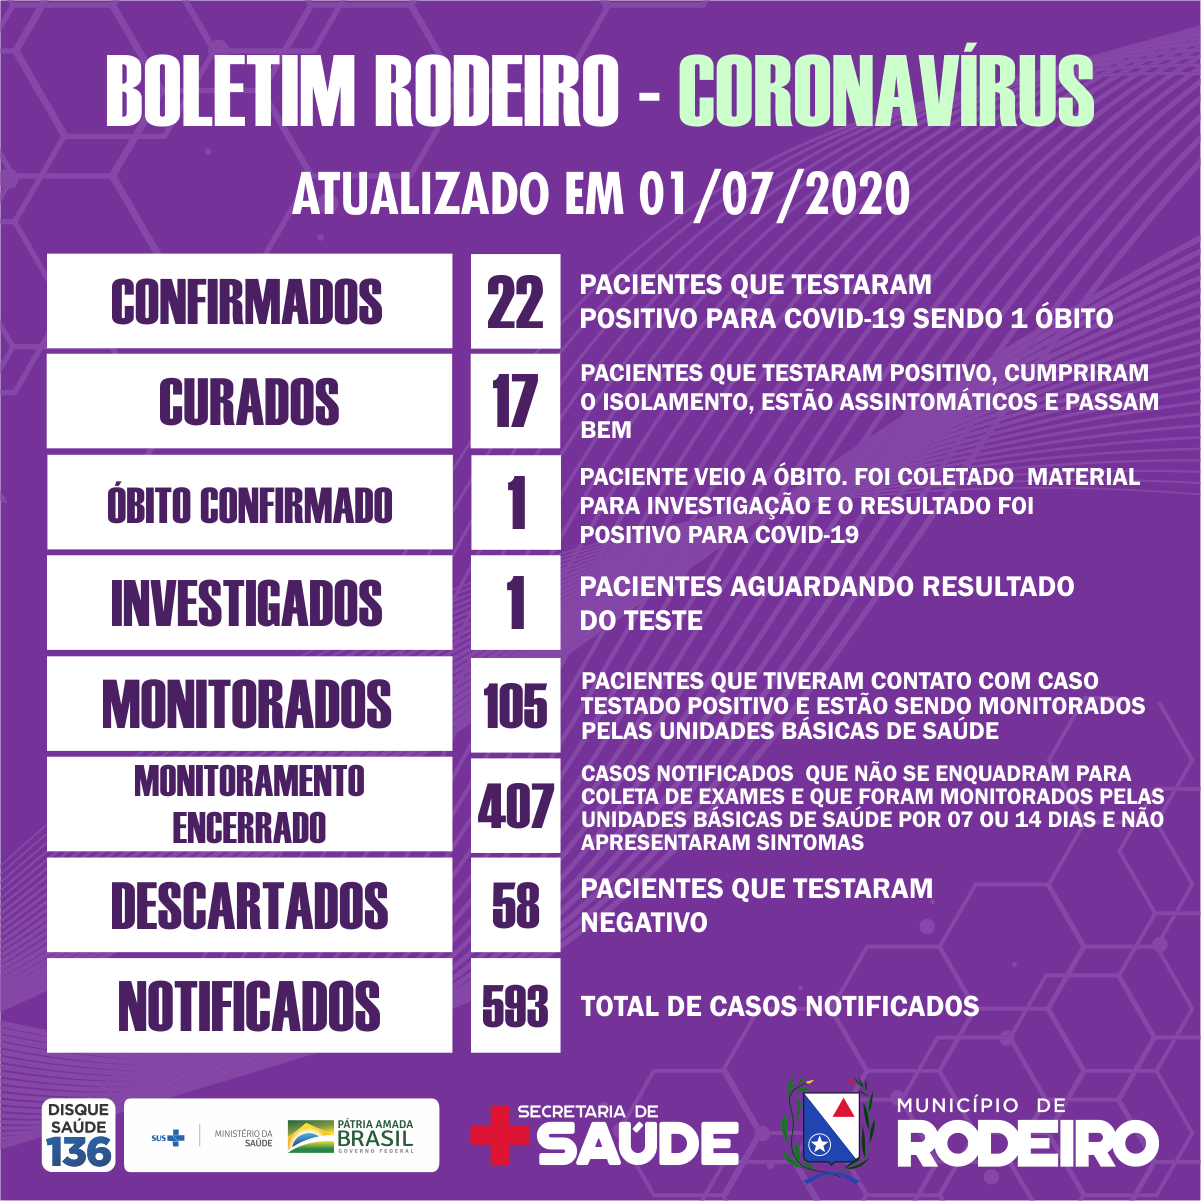 Boletim epidemiológico do Município de Rodeiro coronavírus, atualizado em 01/07/2020